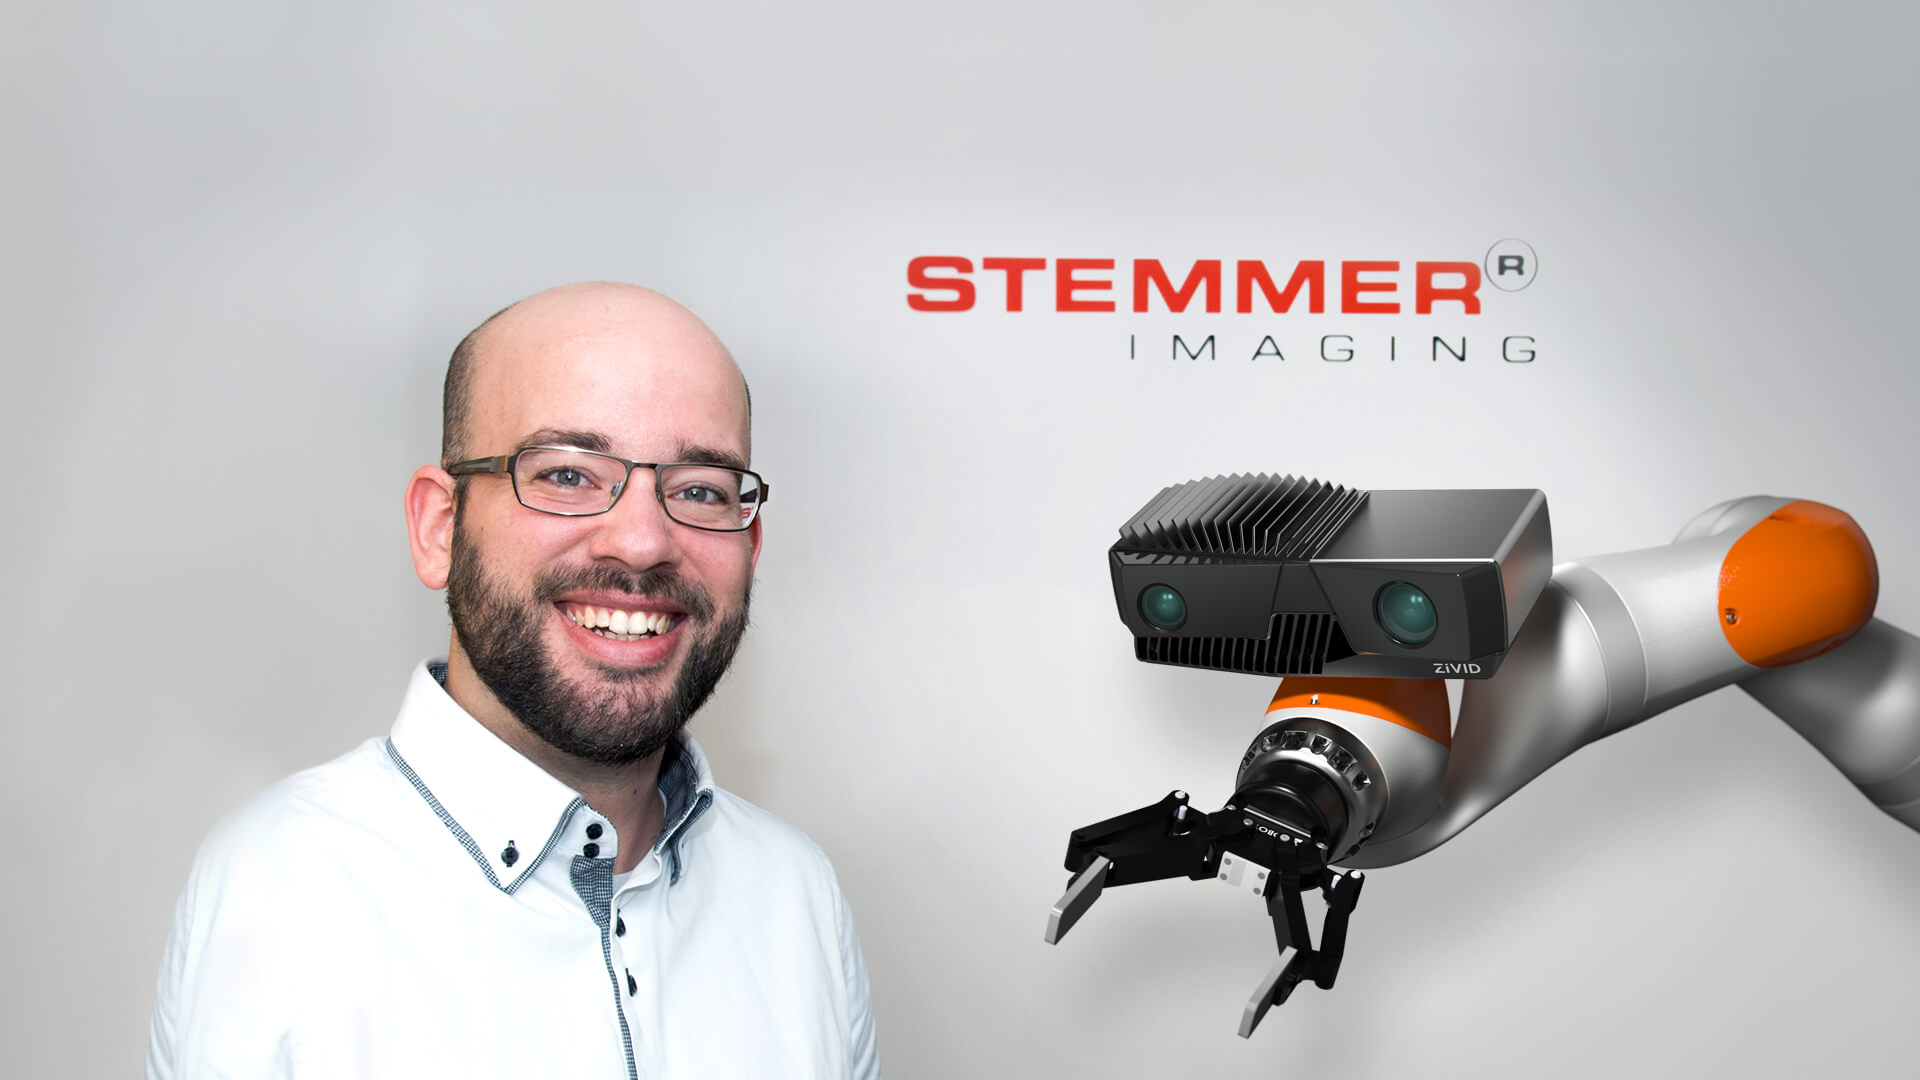 Inside Stemmer Imaging with Tim Huylebrouck